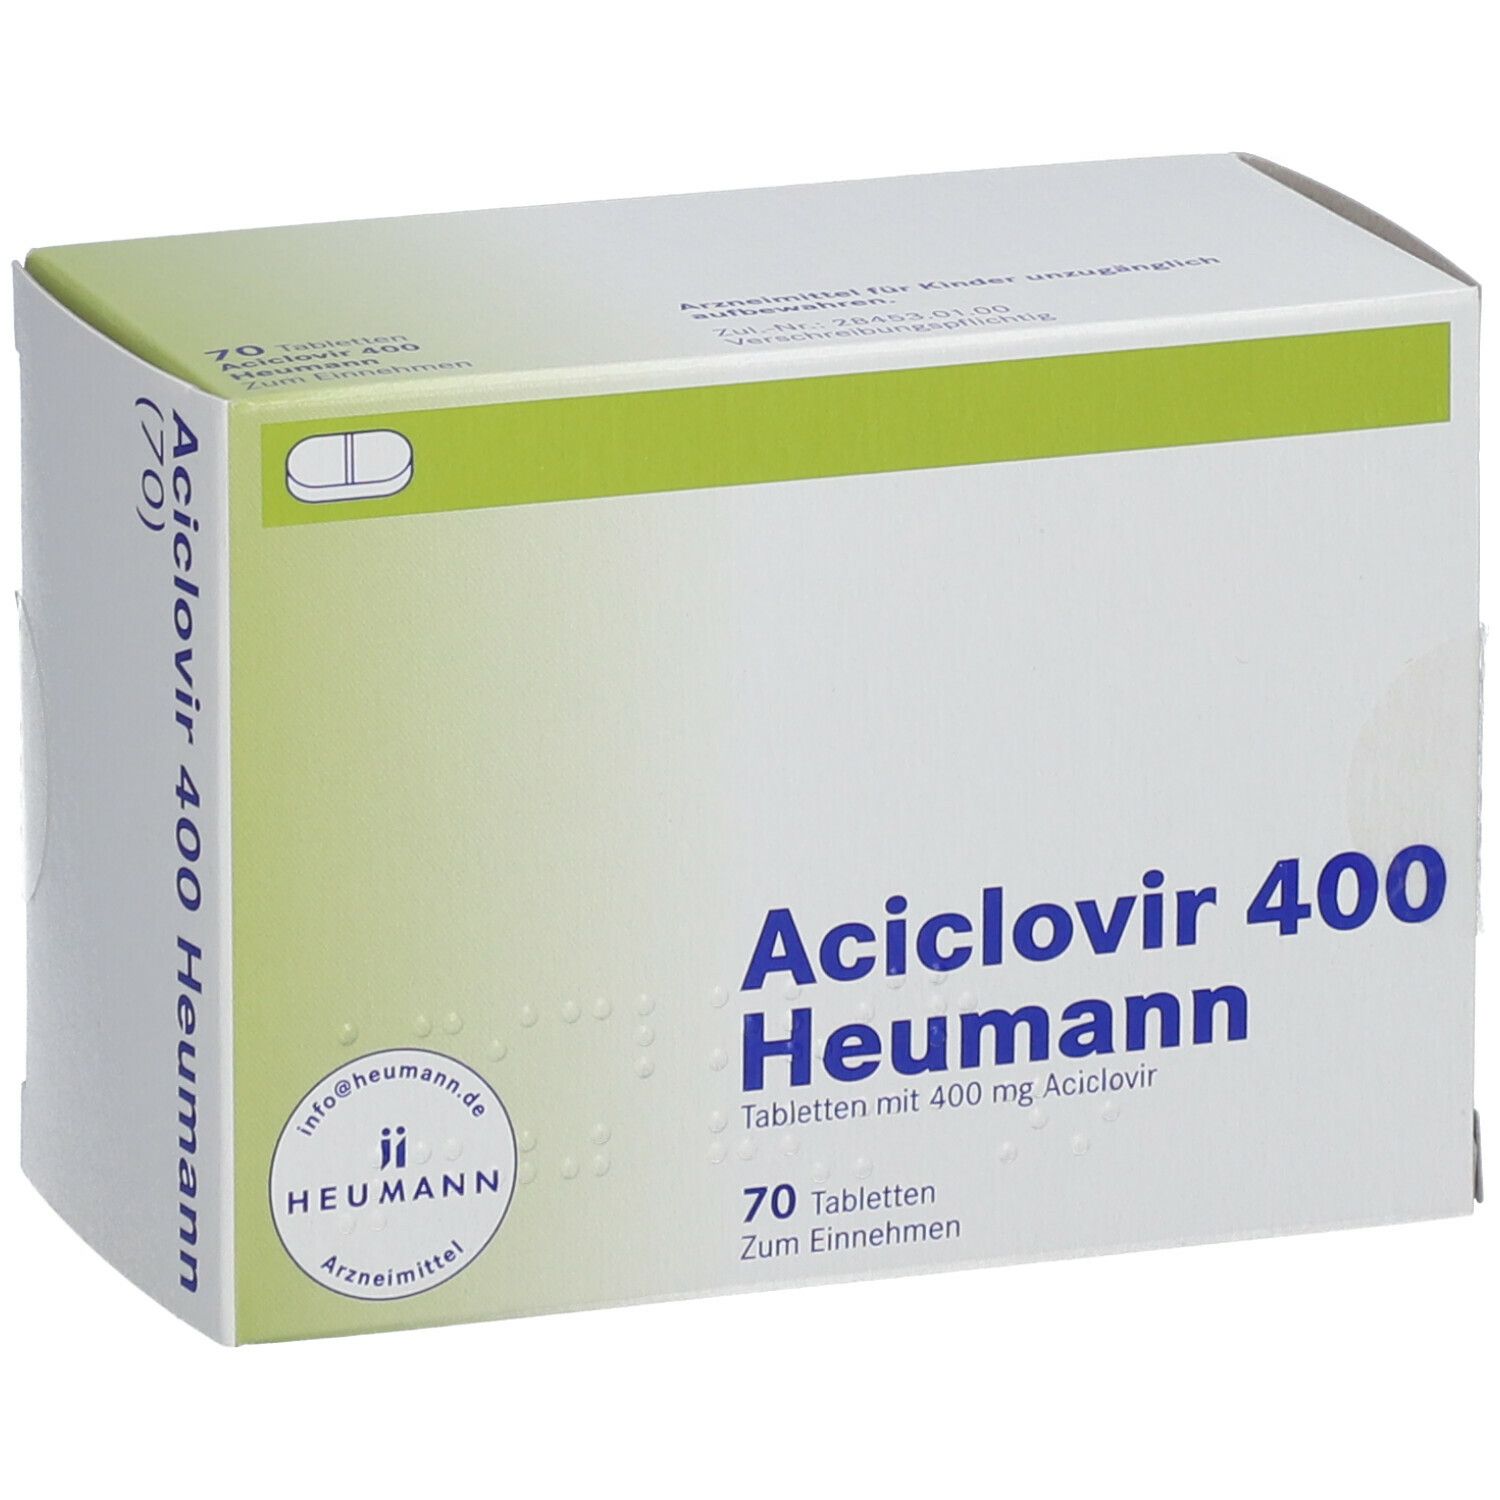 Aciclovir 400 Heumann